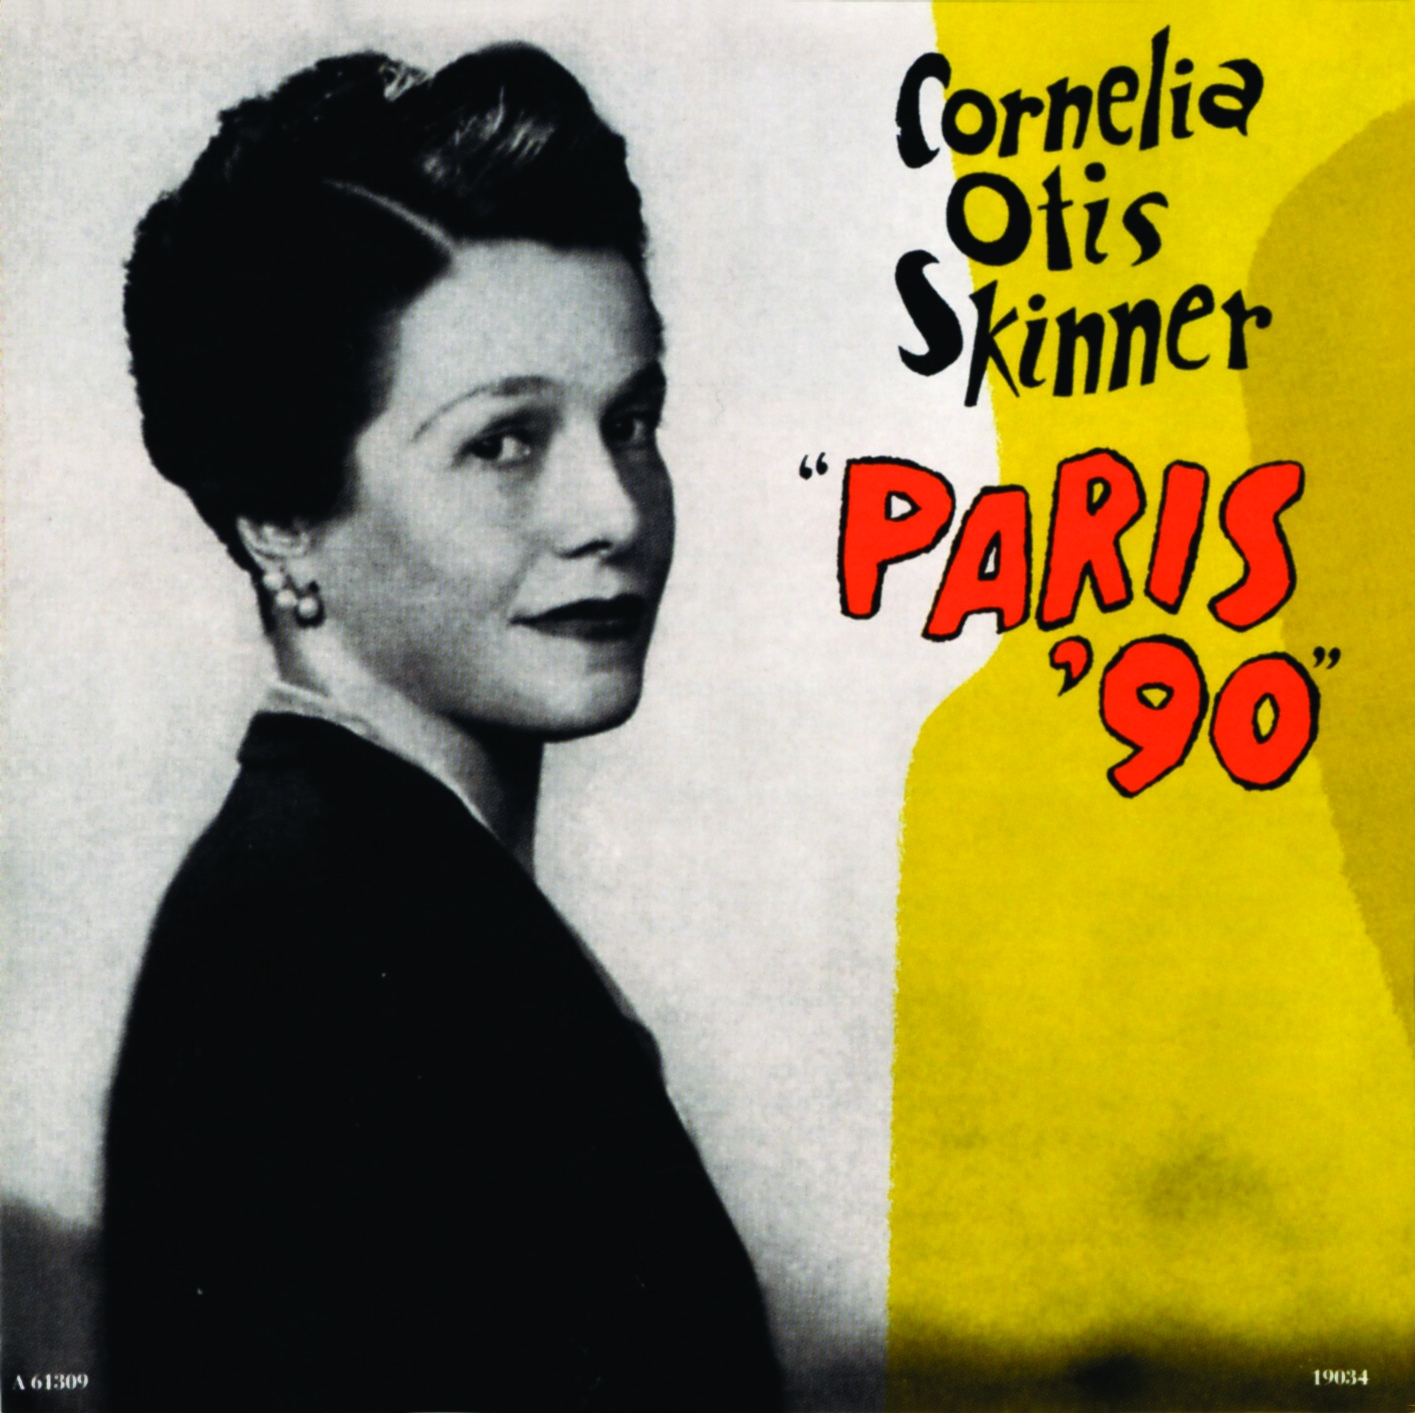 Cornelia Otis Skinner's book, Paris '90